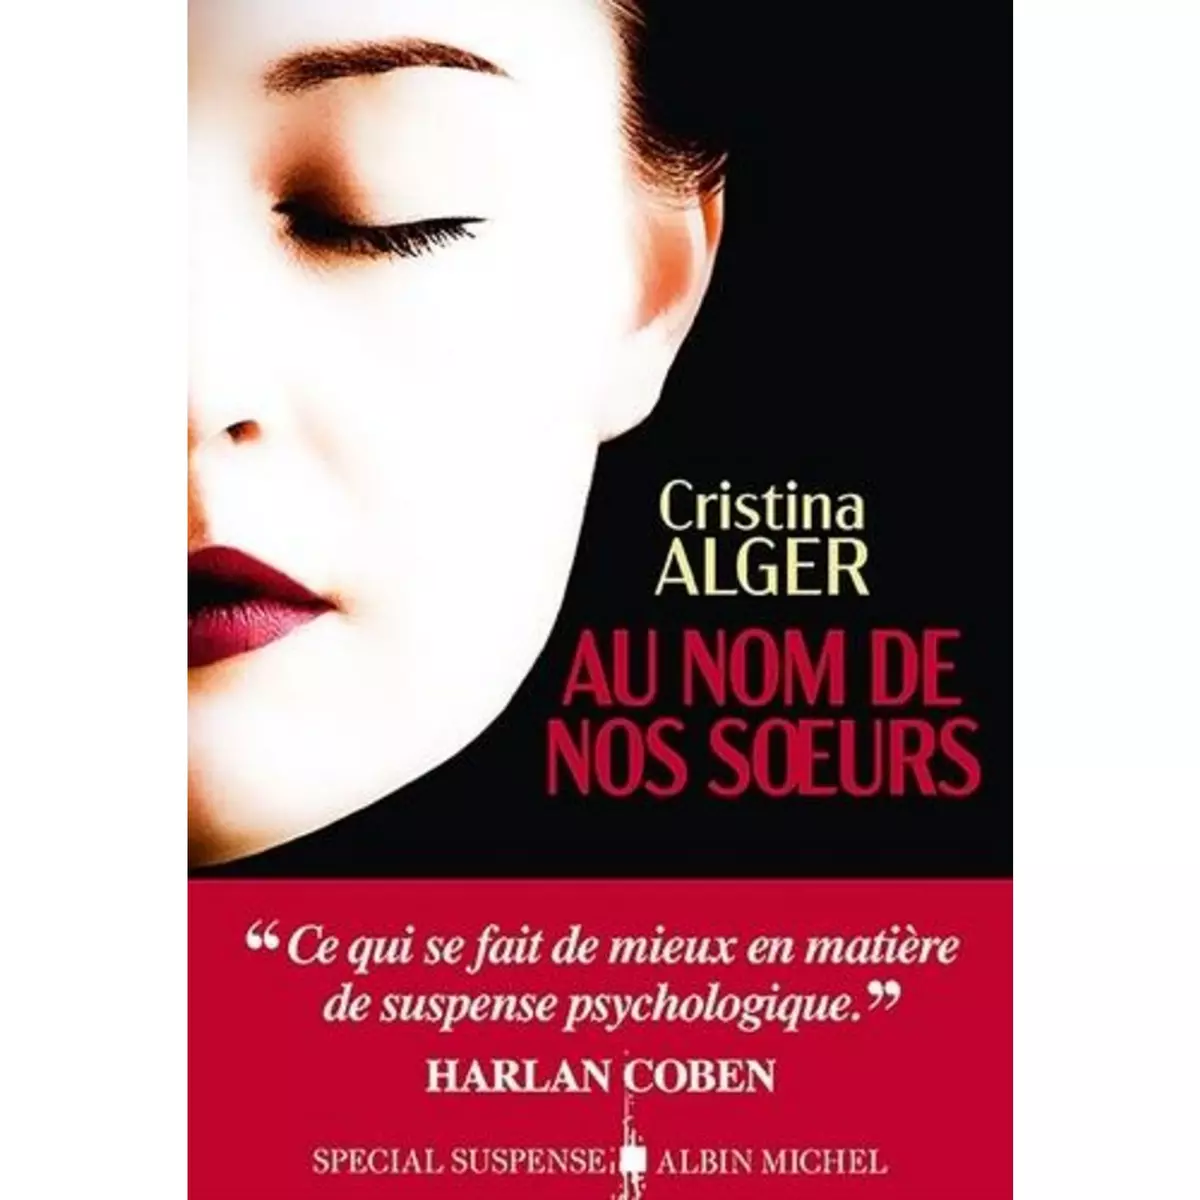  AU NOM DE NOS SOEURS, Alger Cristina